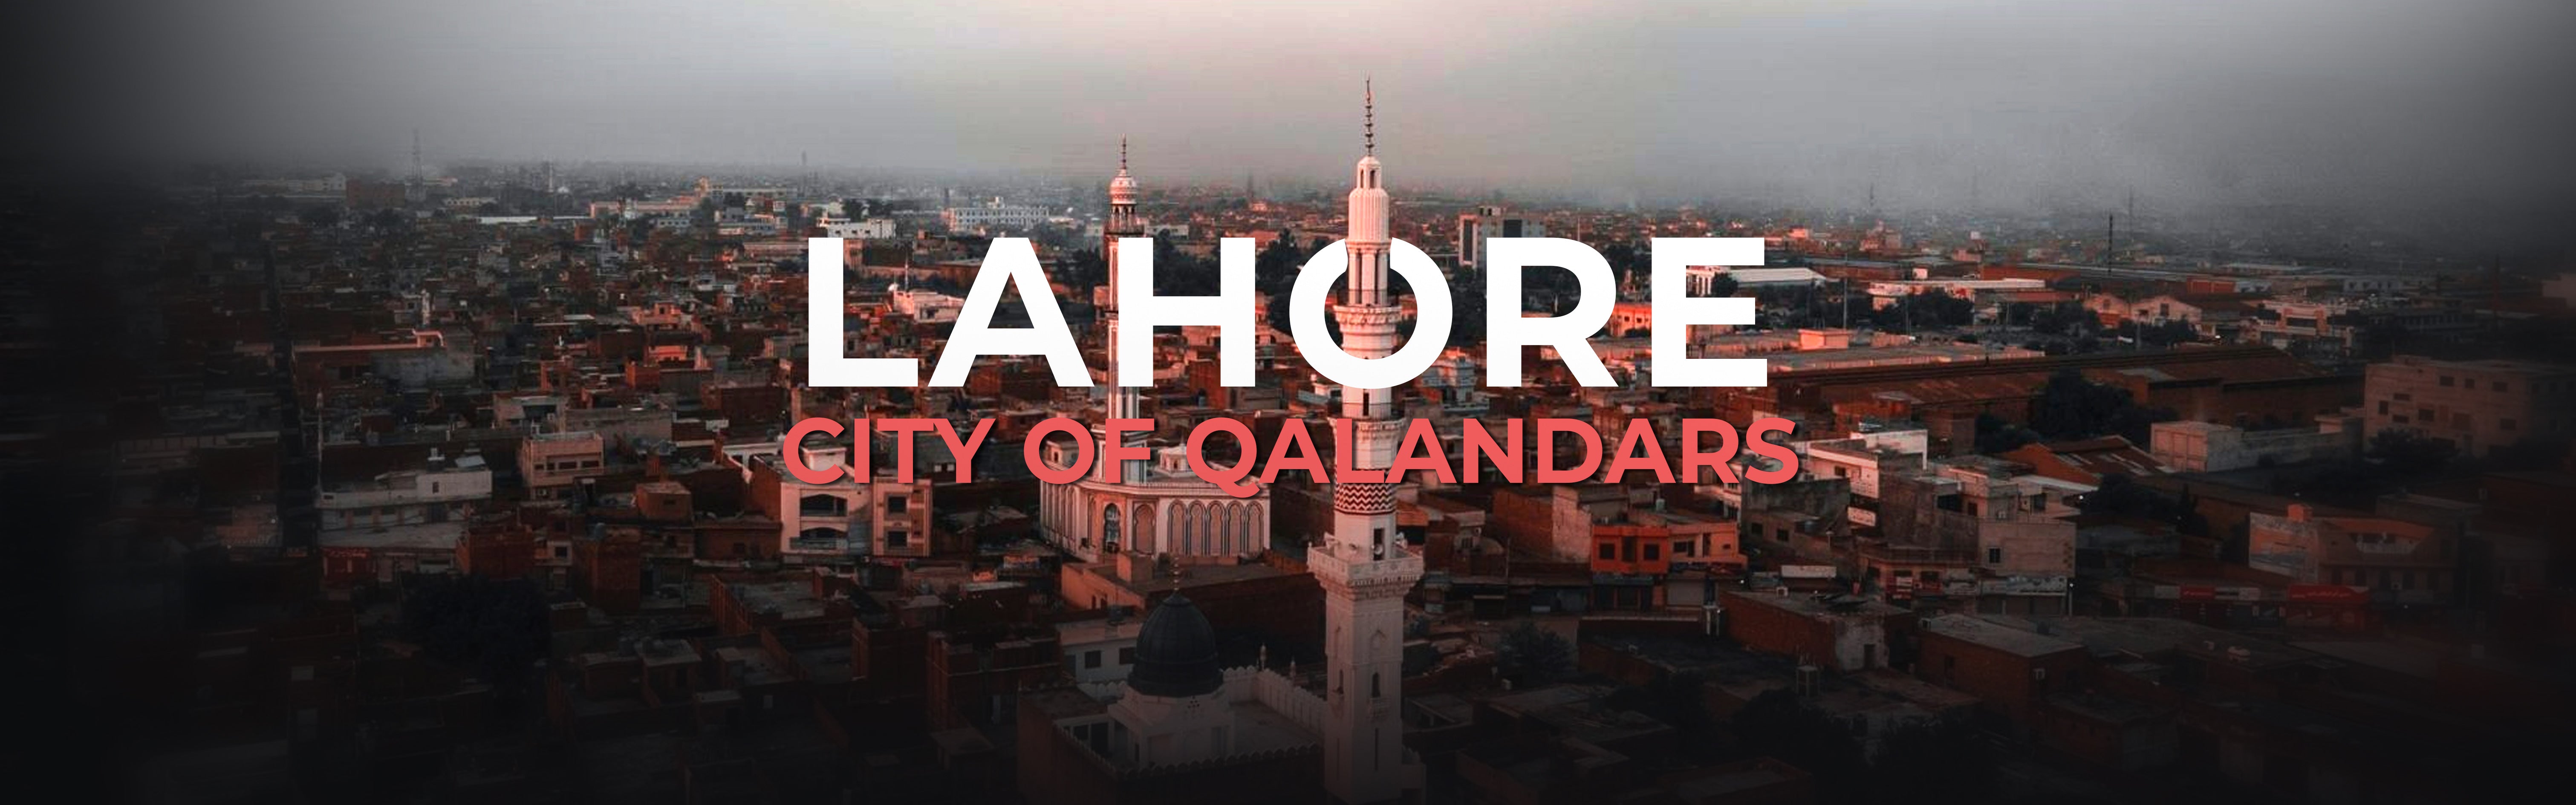 Lahore - A City Of Qalandars